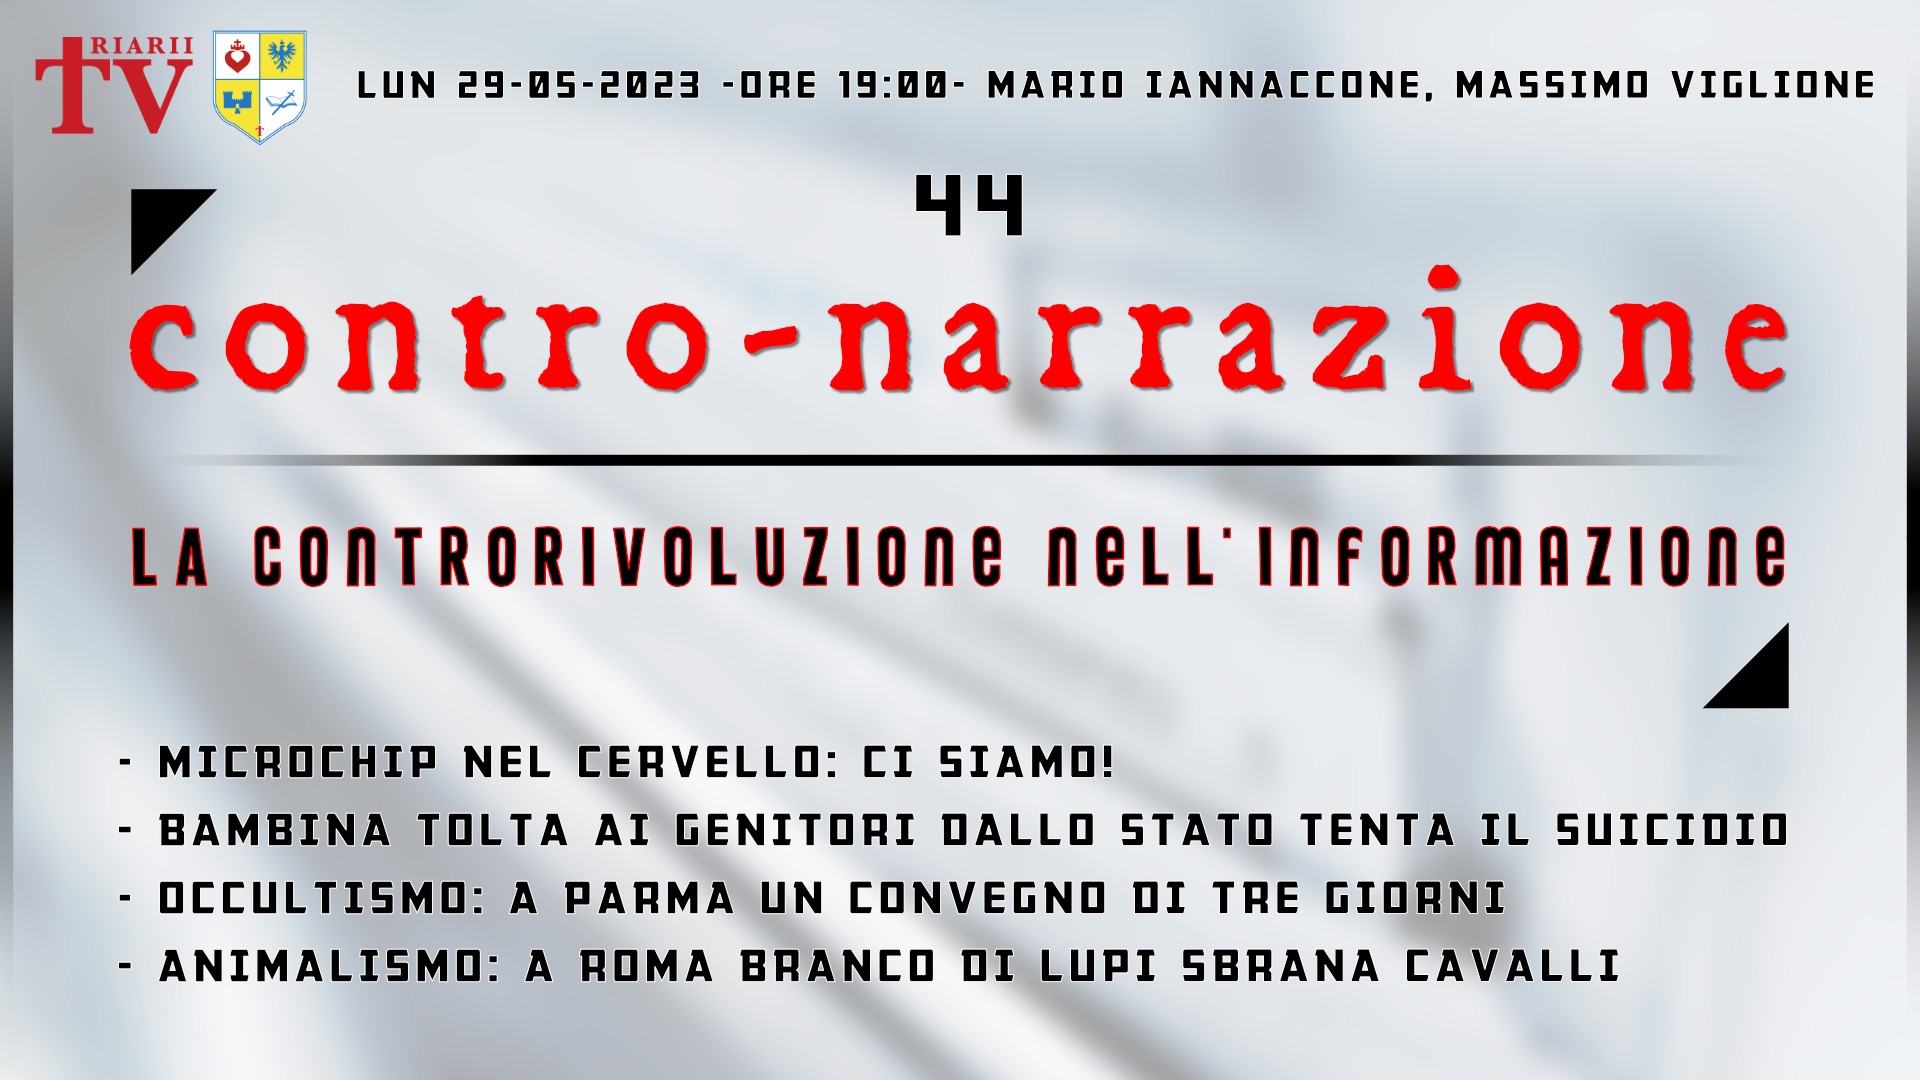 CONTRO-NARRAZIONE NR.44 - LUN 29 MAGGIO 2023 - Mario Iannaccone, Massimo Viglione